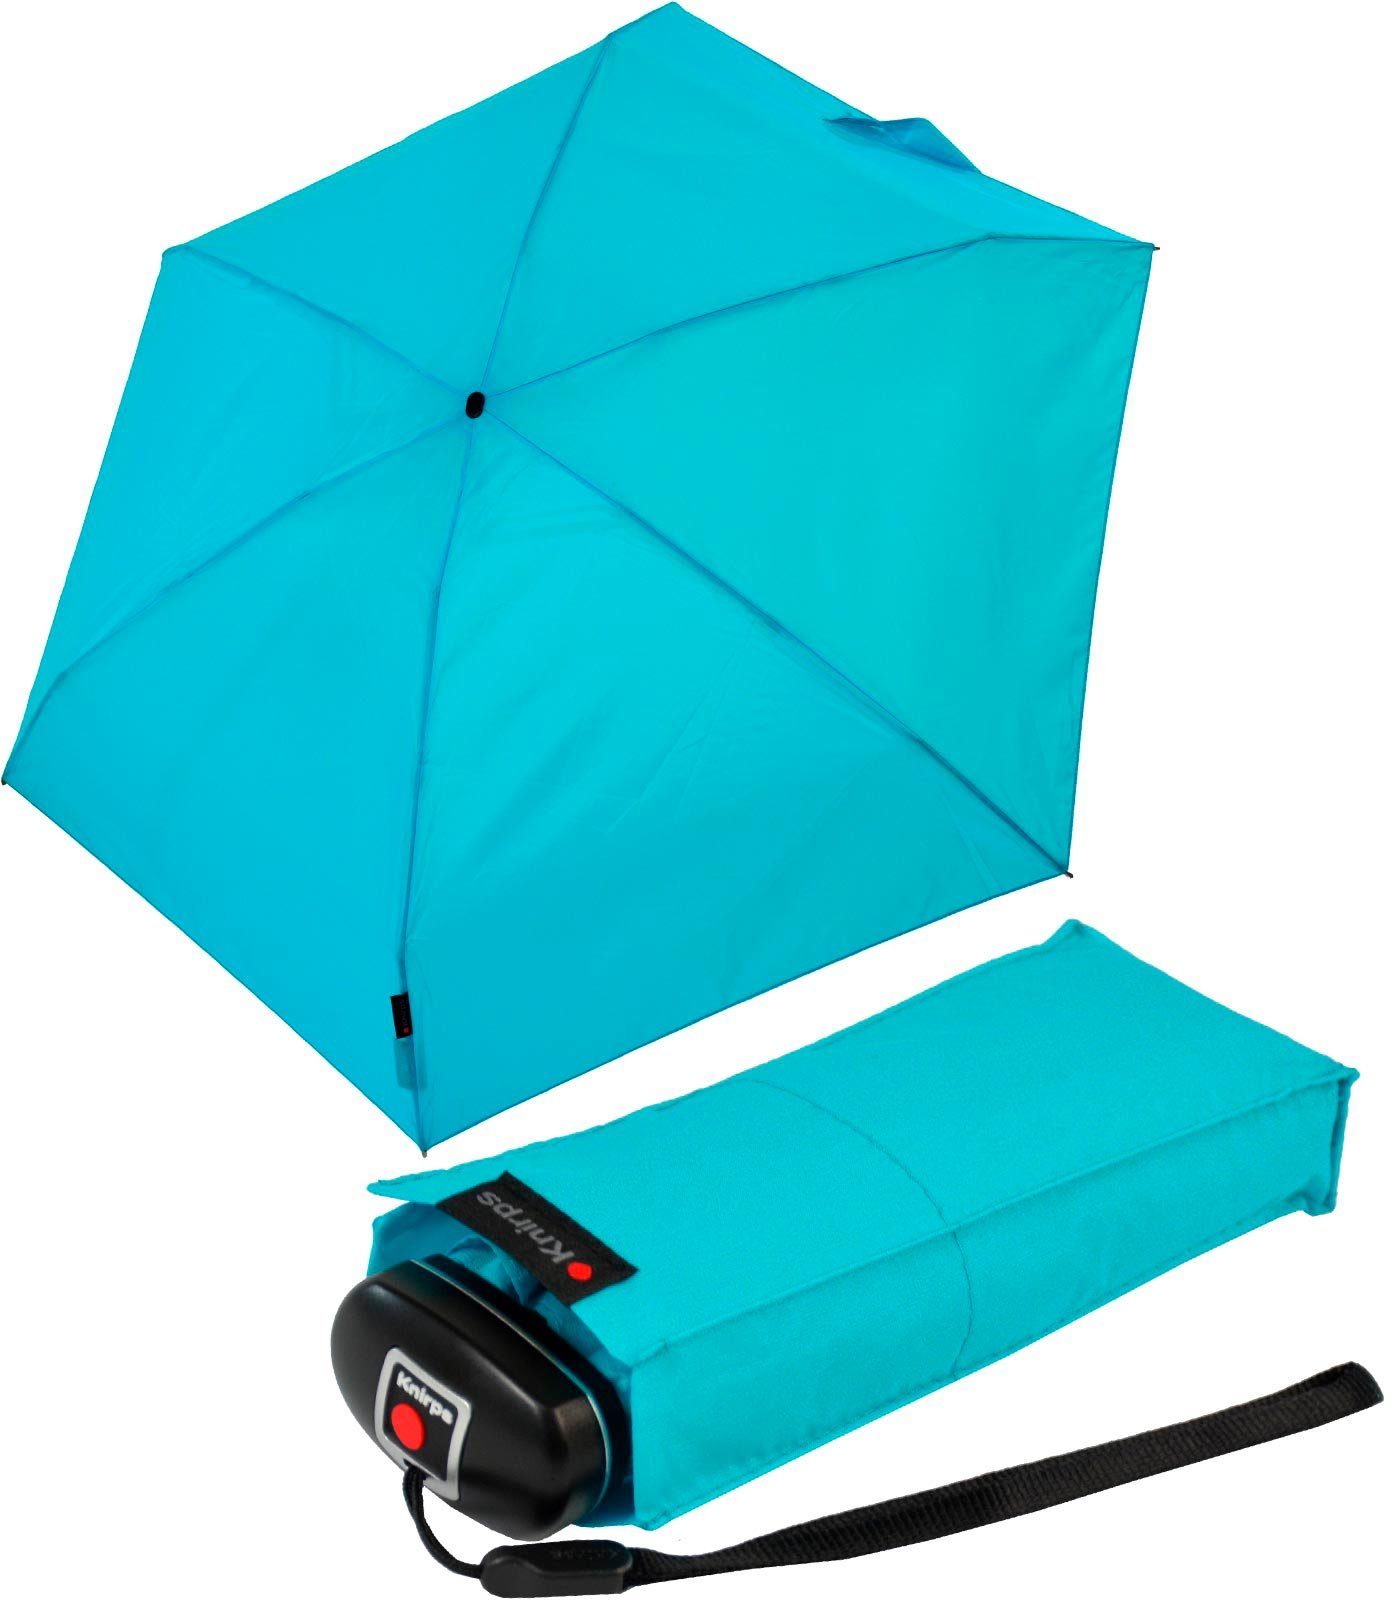 der zuverlässige Begleiter, klein Travel der Knirps® jede leicht in Tasche passt Mini-Schirm kompakt, Taschenregenschirm